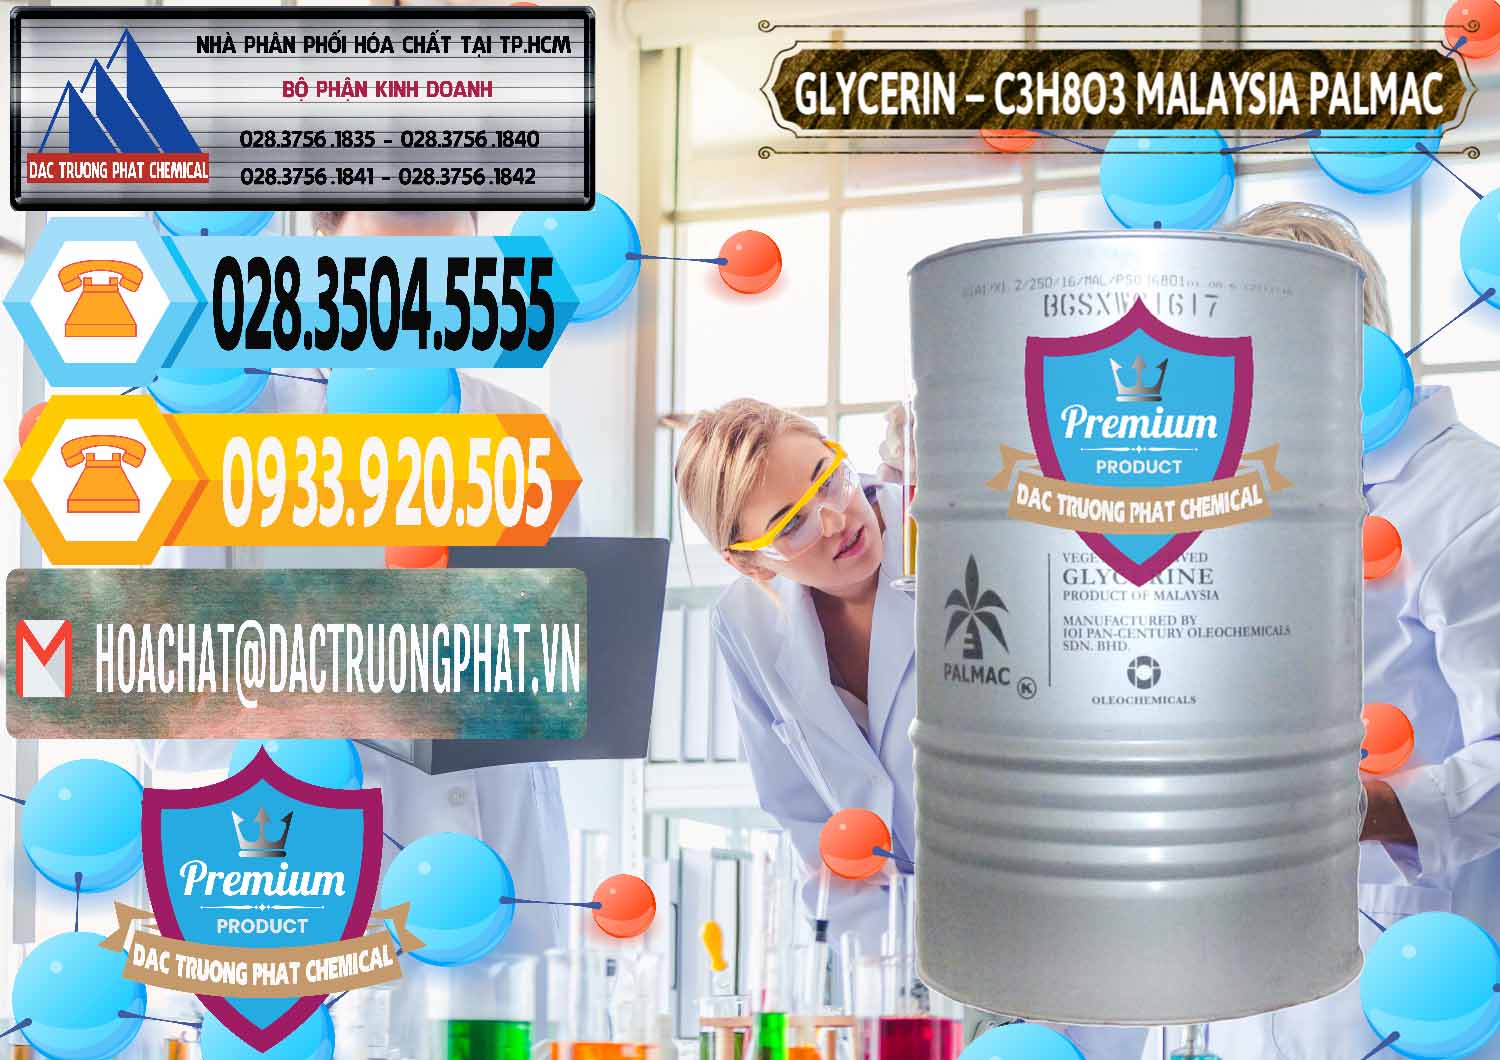 Công ty bán & cung ứng Glycerin – C3H8O3 99.7% Malaysia Palmac - 0067 - Cty chuyên bán & phân phối hóa chất tại TP.HCM - hoachattayrua.net